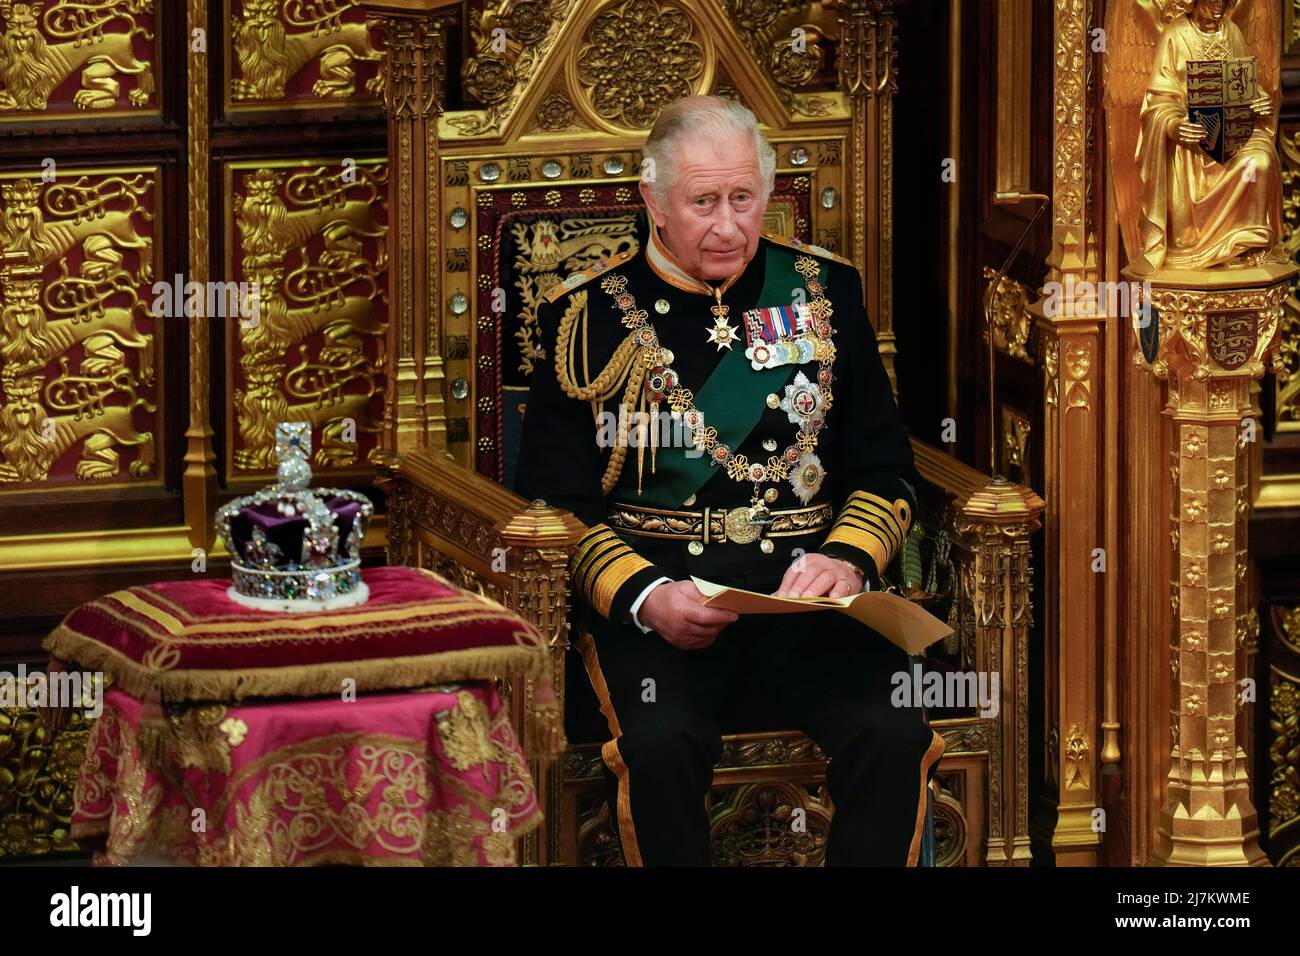 Der Prinz von Wales hält die Rede der Königin während der Eröffnung des Parlaments im House of Lords, London. Bilddatum: Dienstag, 10. Mai 2022. Stockfoto